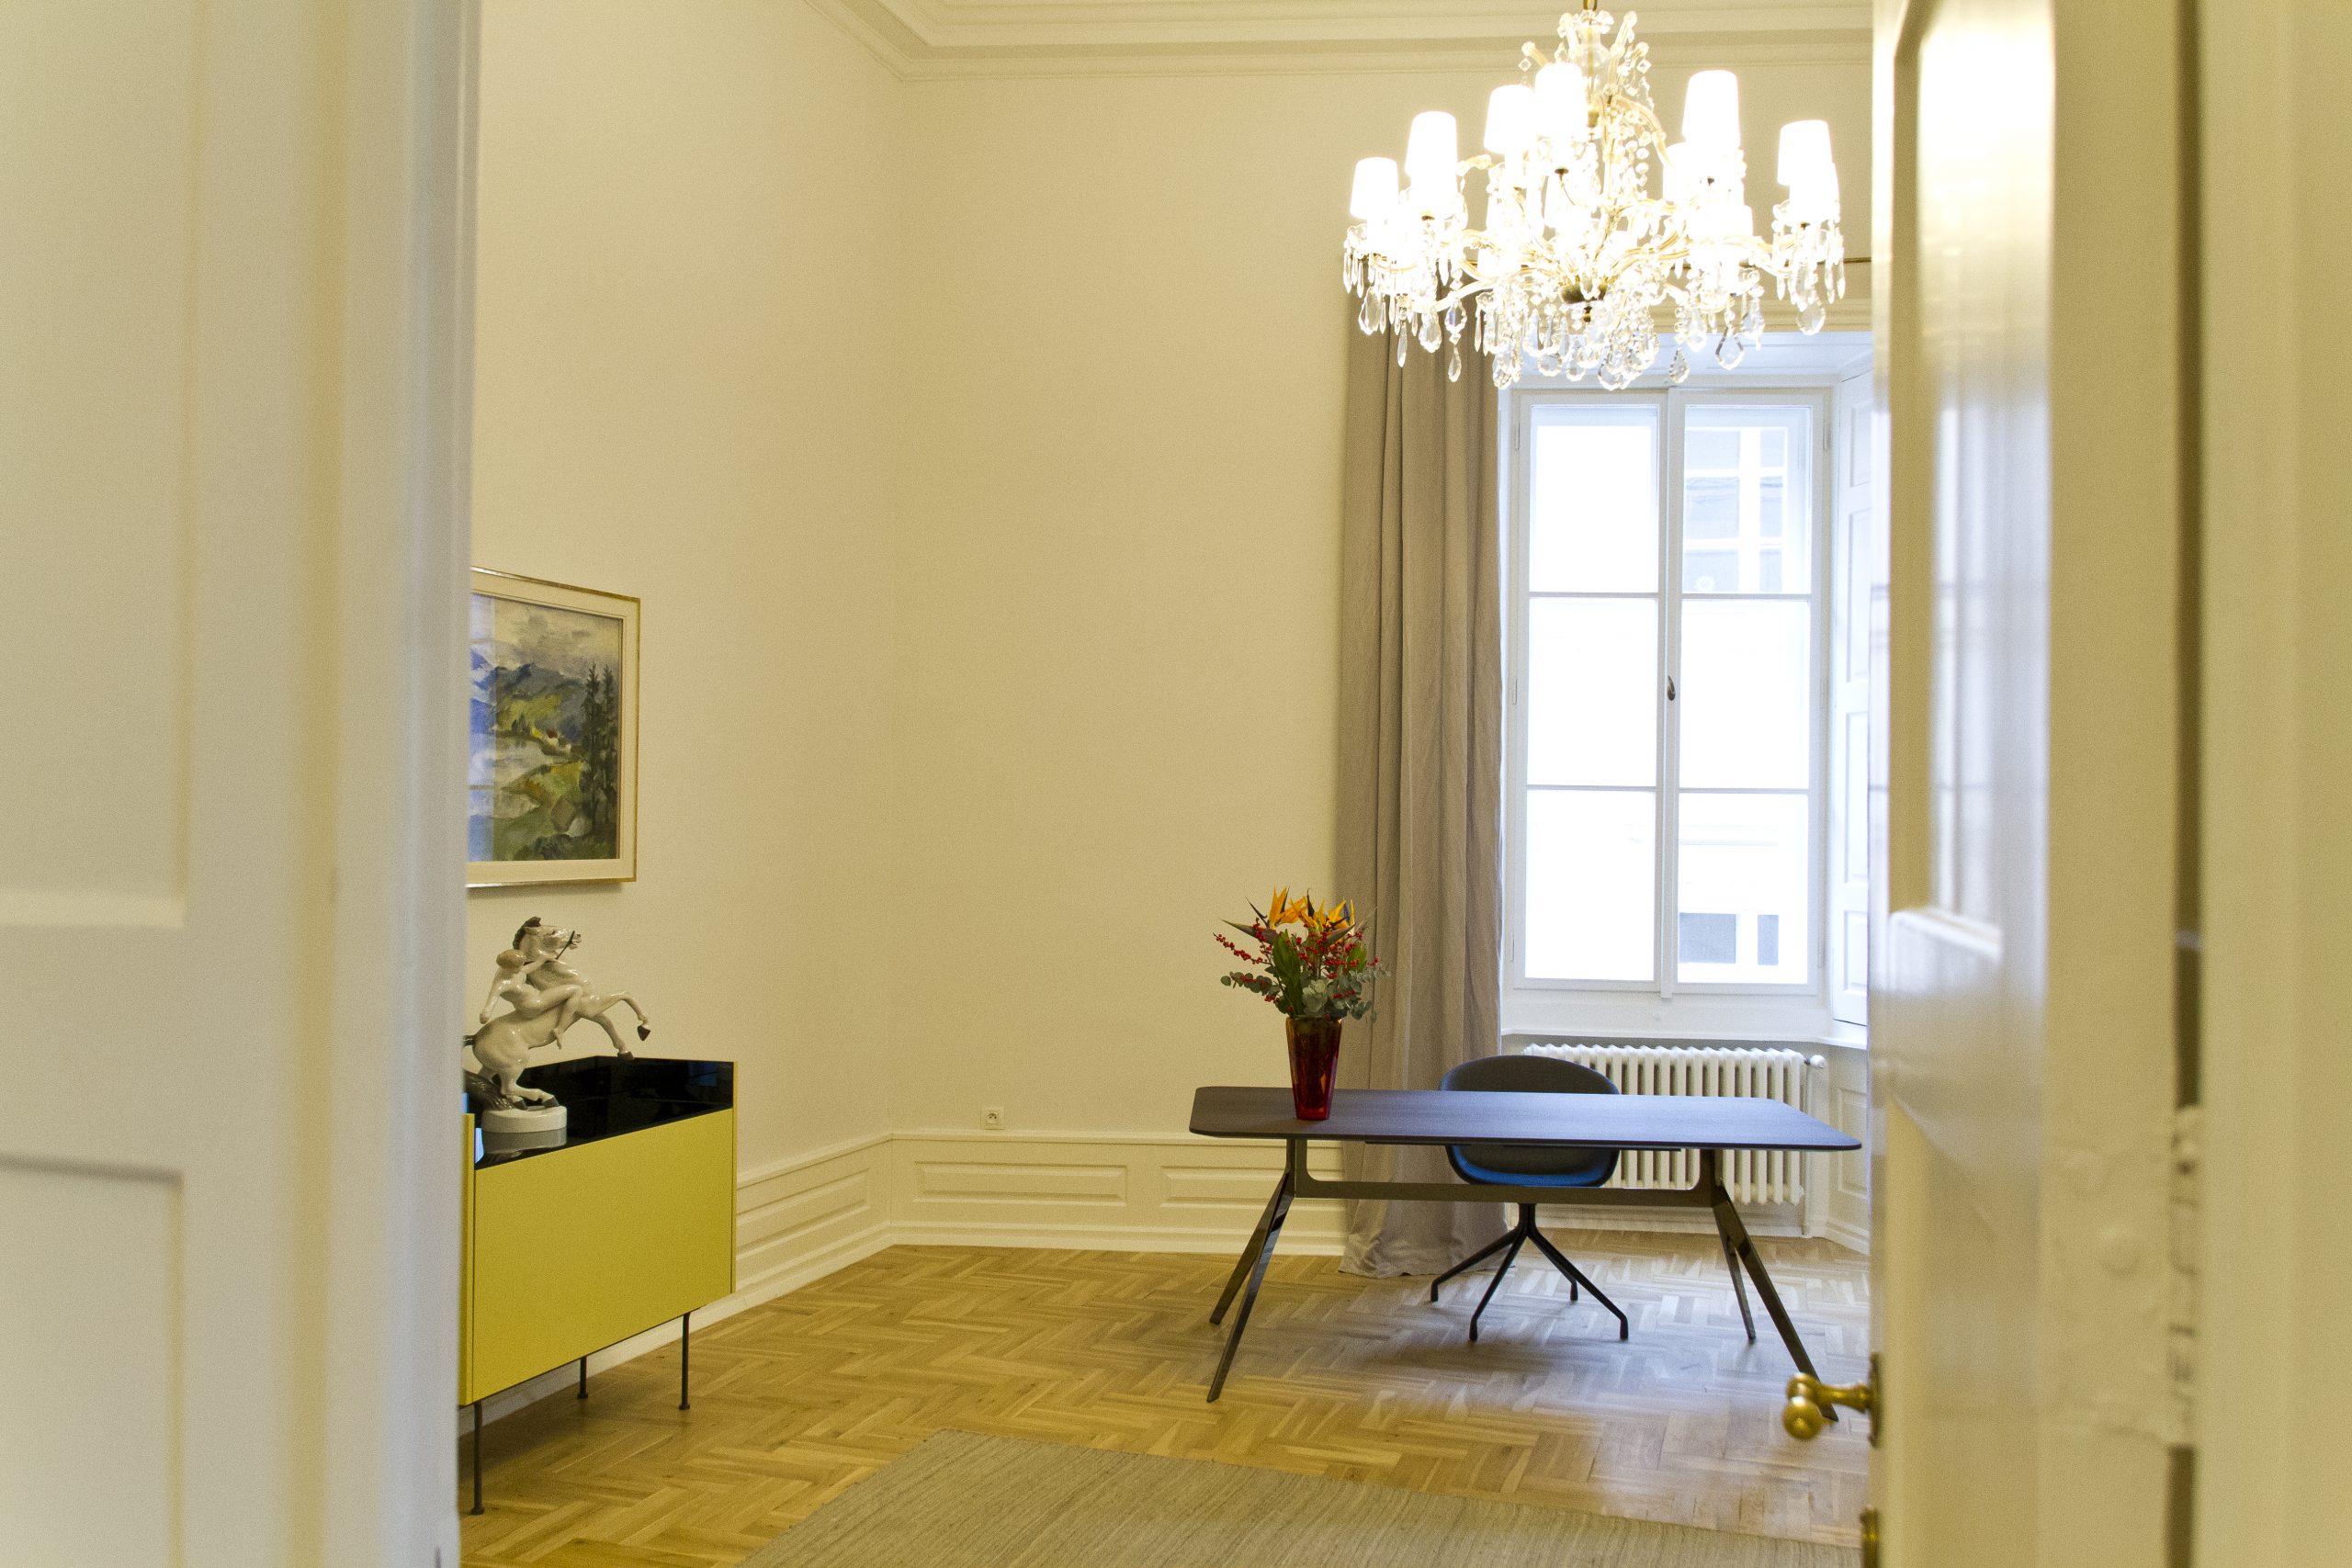 Ein Zimmer in der Bayerischen Repräsentanz in Prag: Ein kleiner Schrank links. Über den kleinen Schrank hängt ein Bild an der Wand. Rechts steht vor dem Fenster ein Tisch.